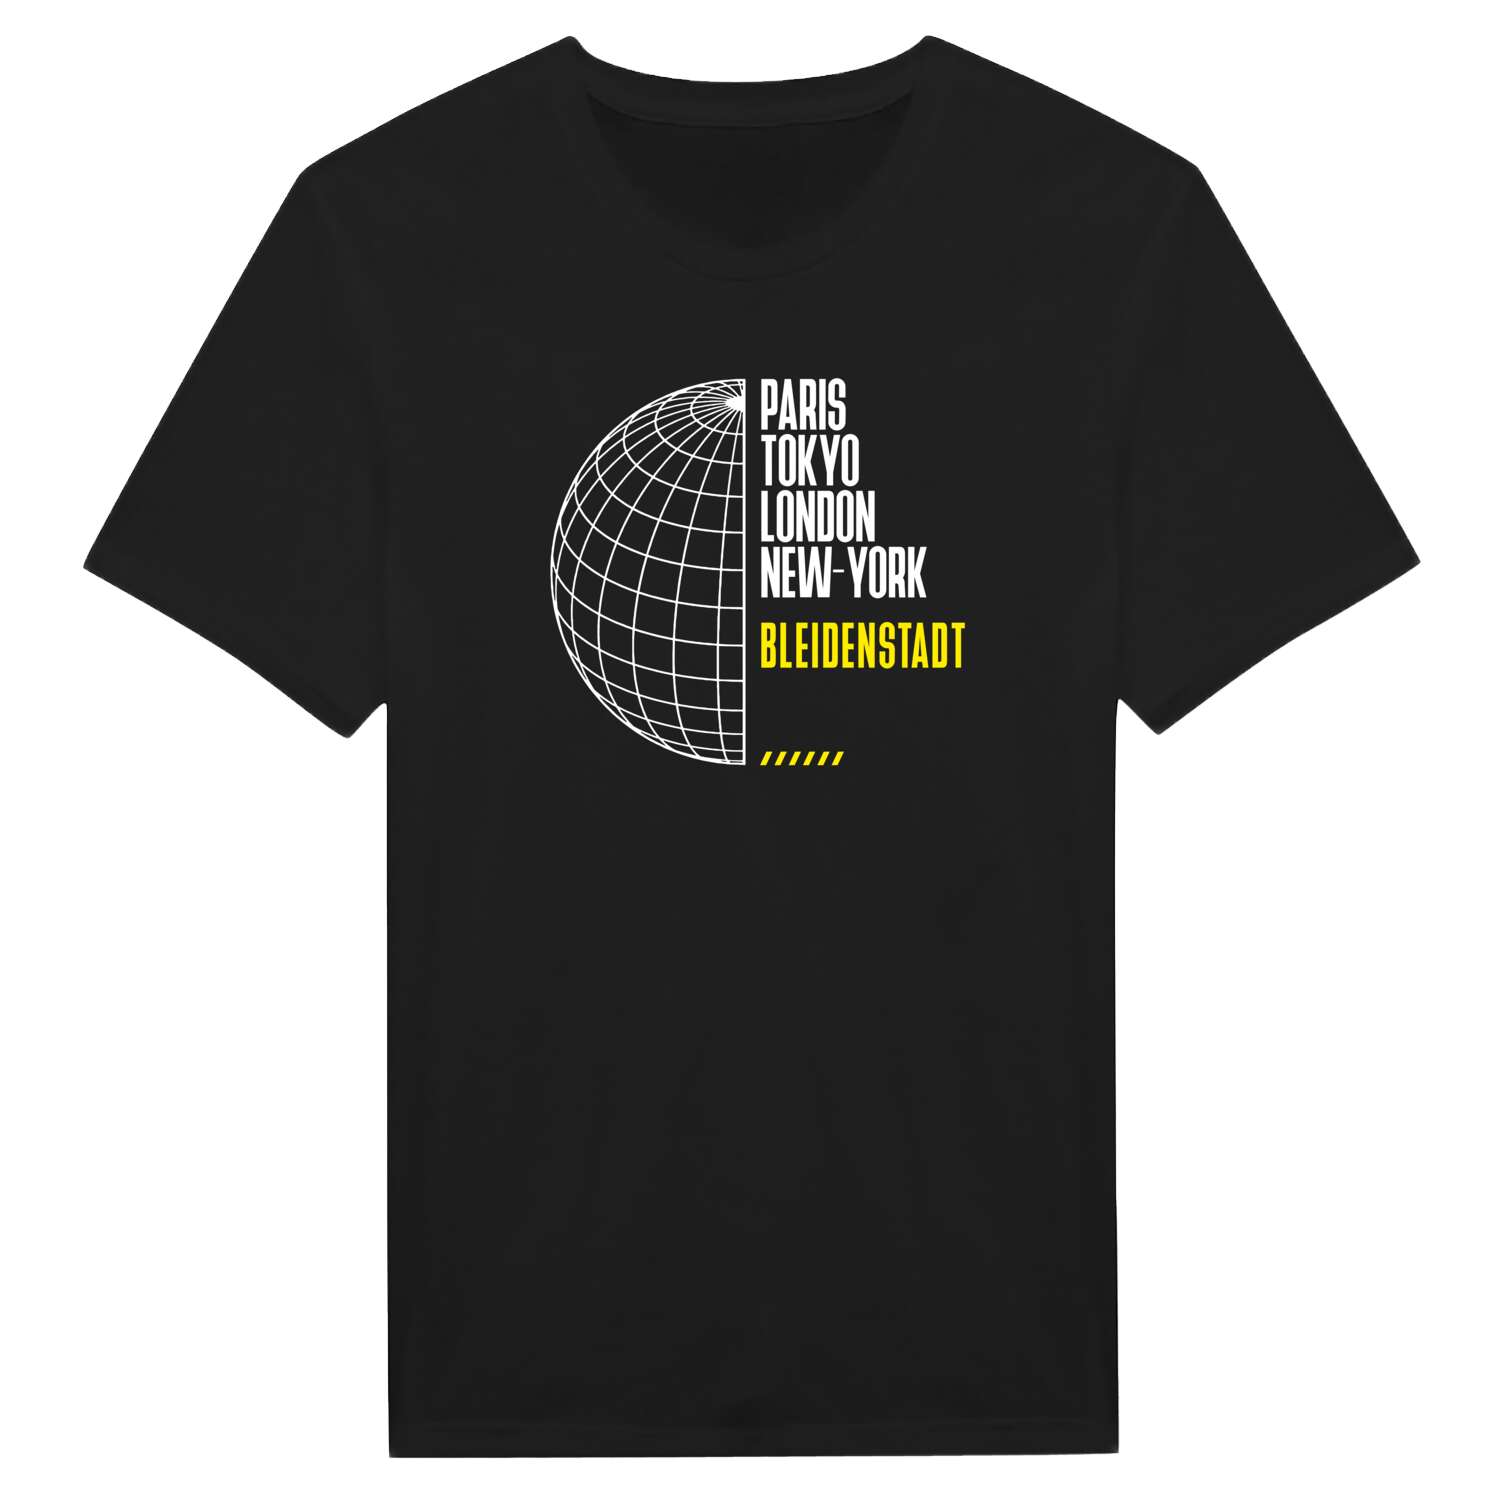 Bleidenstadt T-Shirt »Paris Tokyo London«